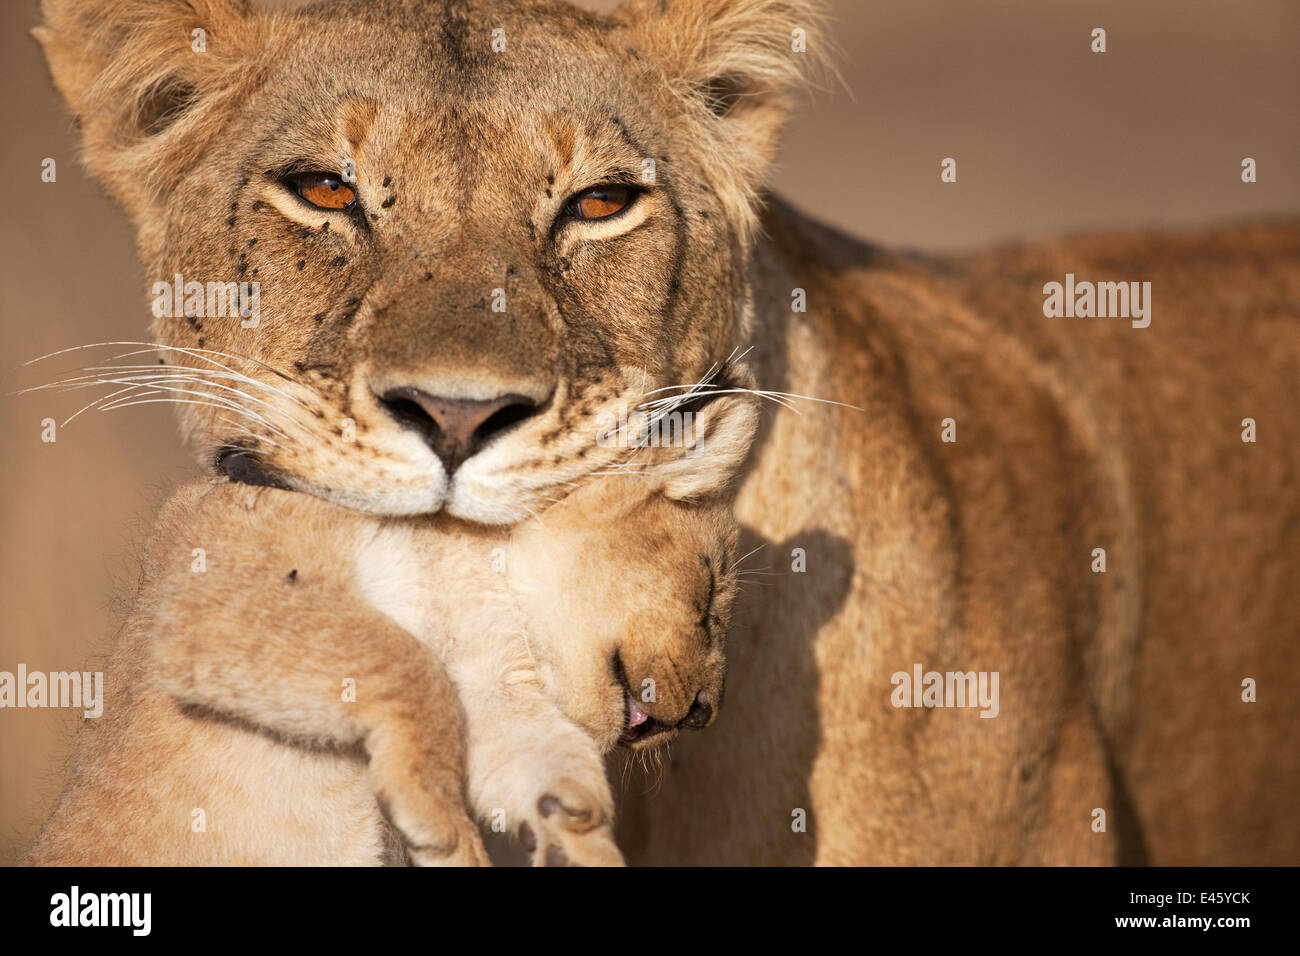 Löwin (Panthera Leo) trägt ihr junges im Alter von 2-3 Monaten. Masai Mara National Reserve, Kenia. August 2009. Stockfoto